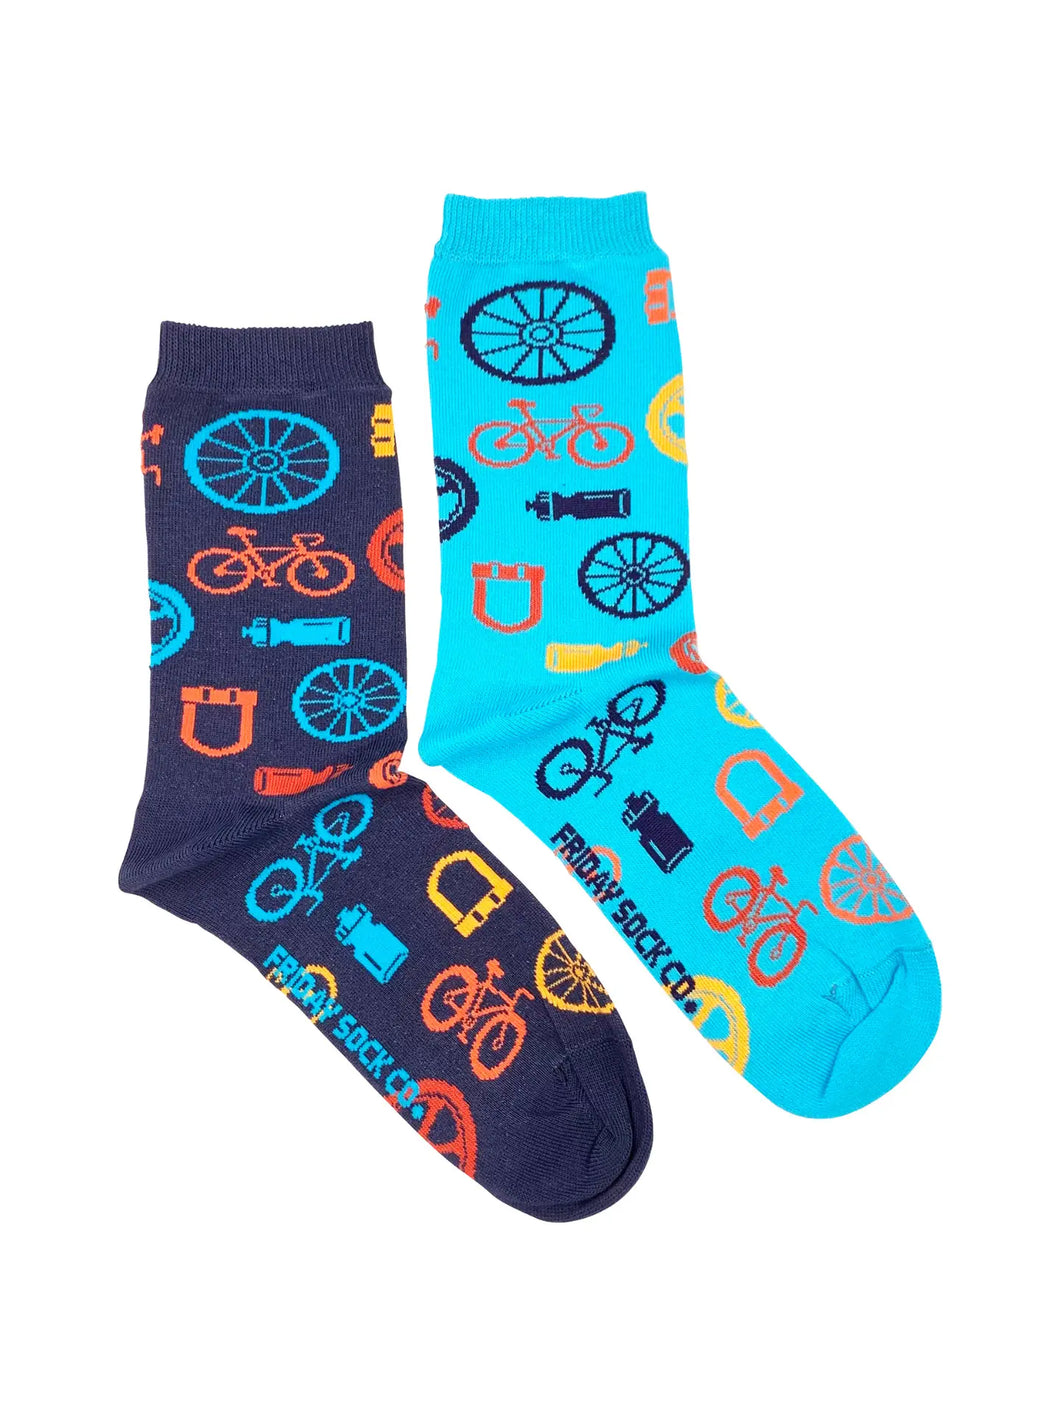 women's socks - bike parts